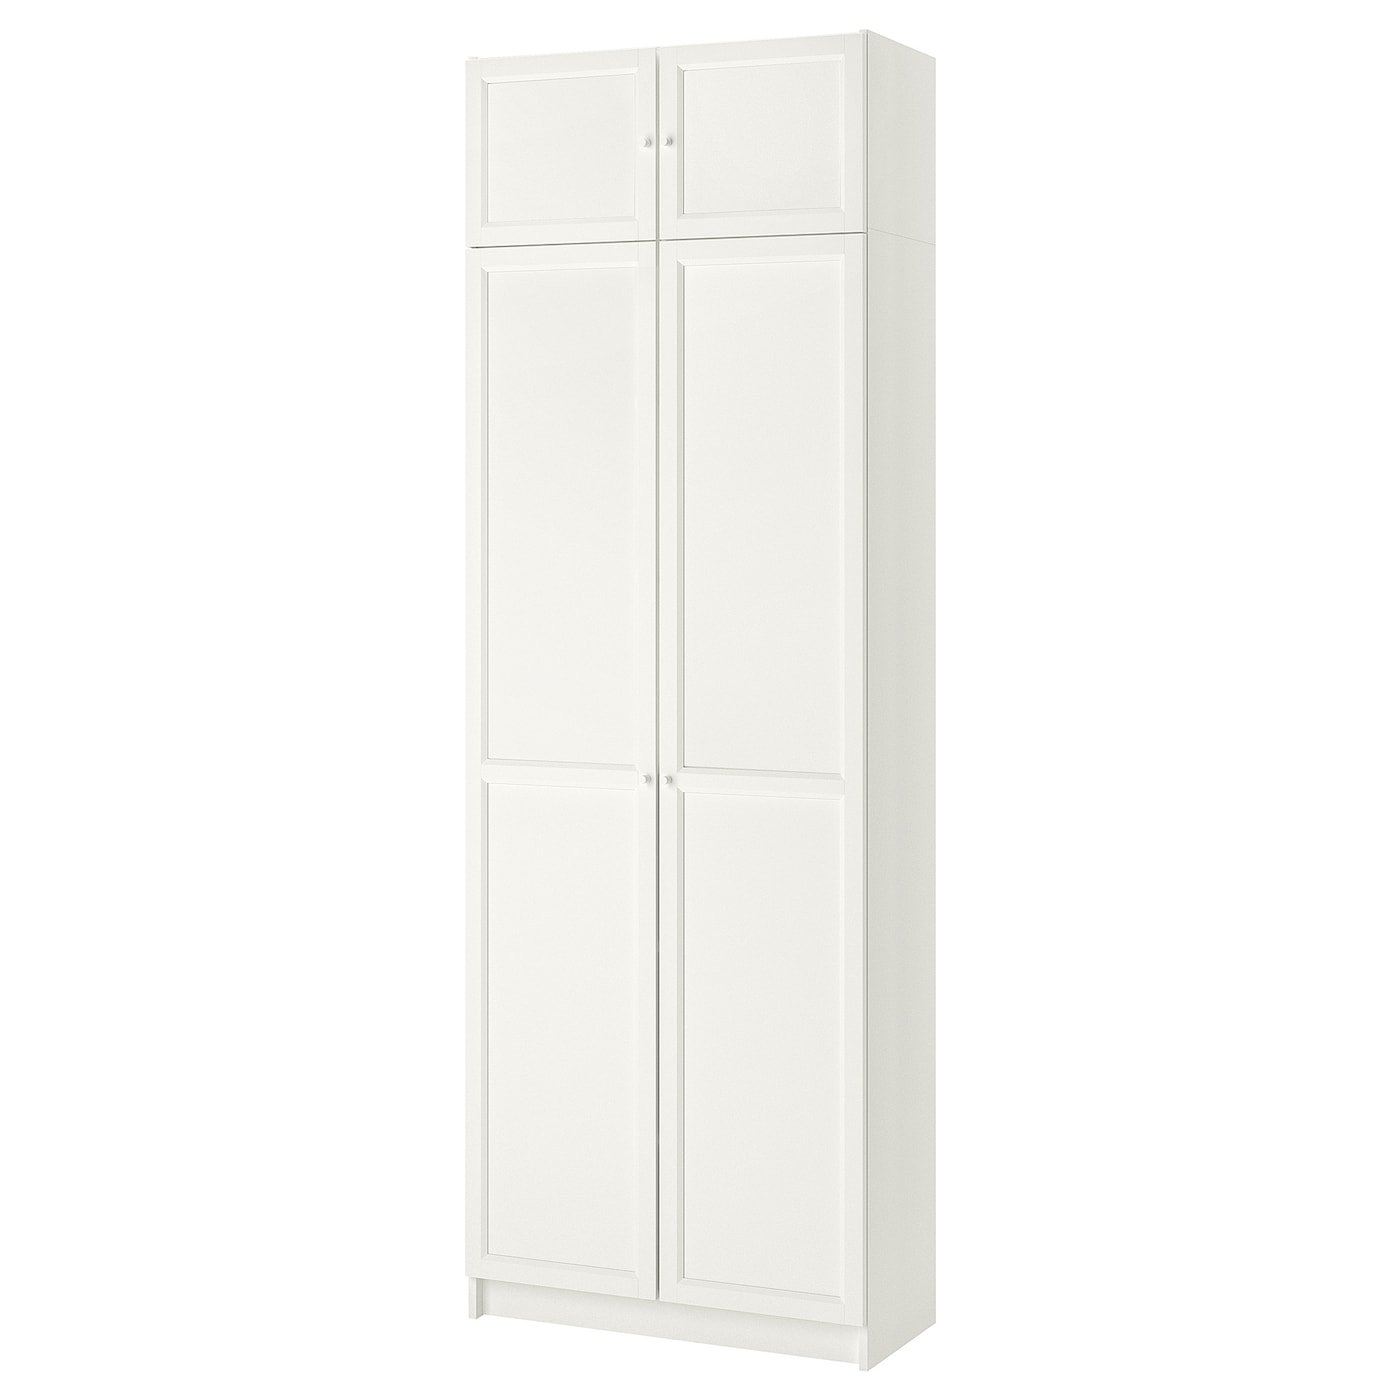 Книжный шкаф - BILLY / OXBERG IKEA/ БИЛЛИ/  ОКСБЕРГ ИКЕА,  237х80 см, белый